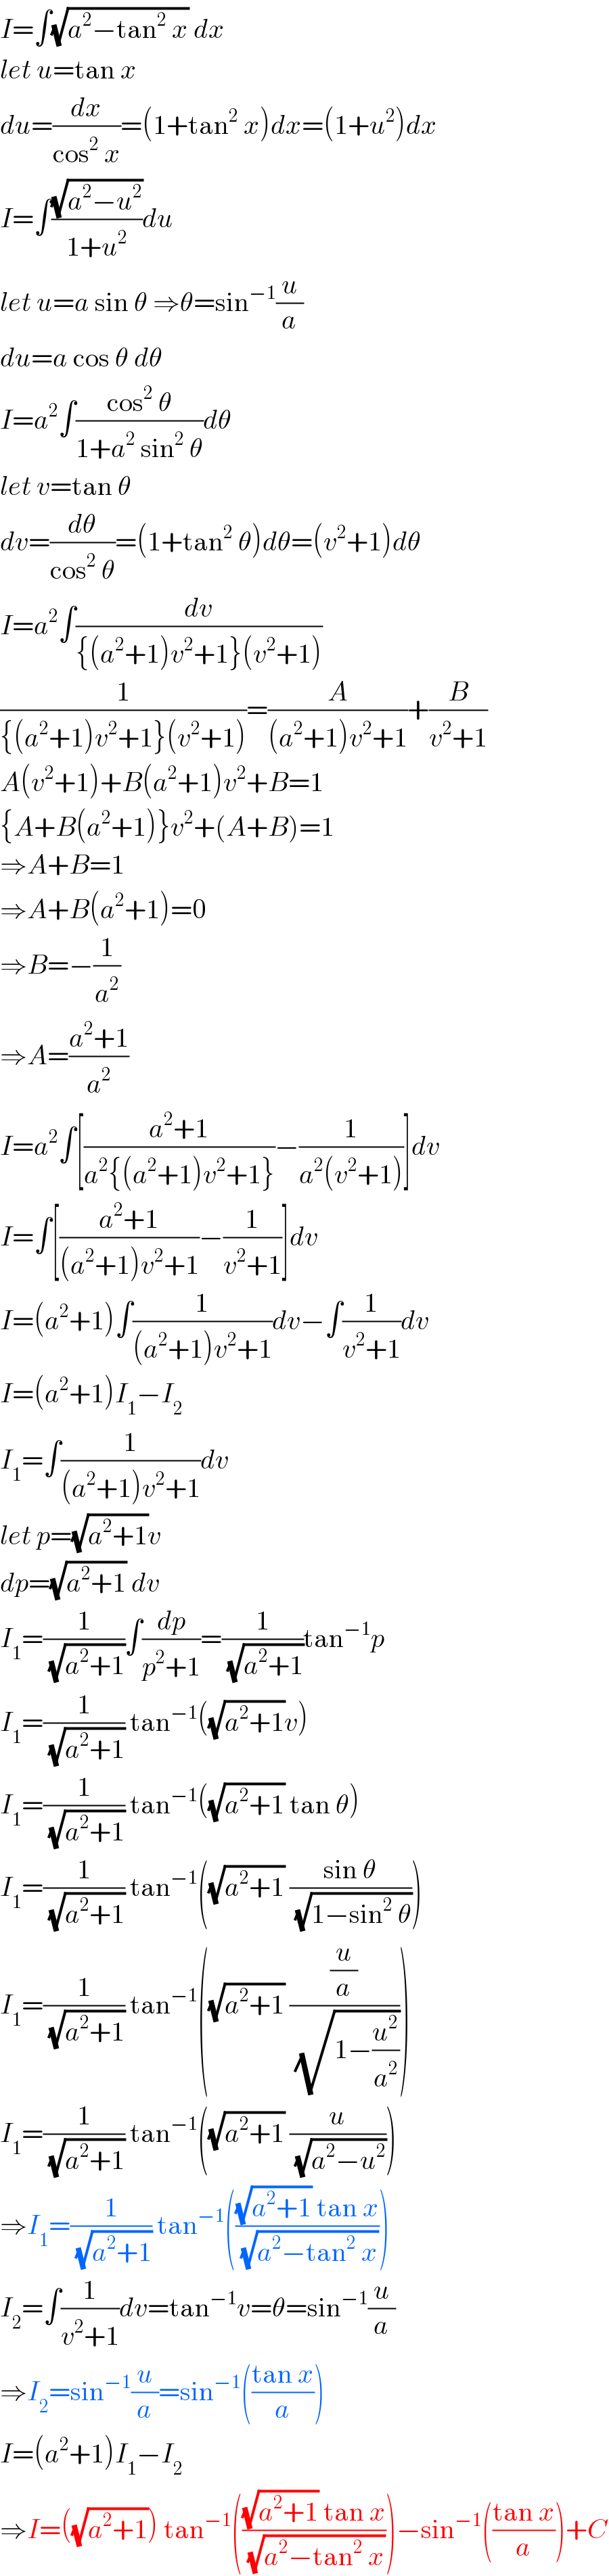 I=∫(√(a^2 −tan^2  x)) dx  let u=tan x  du=(dx/(cos^2  x))=(1+tan^2  x)dx=(1+u^2 )dx  I=∫((√(a^2 −u^2 ))/(1+u^2 ))du  let u=a sin θ ⇒θ=sin^(−1) (u/a)  du=a cos θ dθ  I=a^2 ∫((cos^2  θ)/(1+a^2  sin^2  θ))dθ  let v=tan θ  dv=(dθ/(cos^2  θ))=(1+tan^2  θ)dθ=(v^2 +1)dθ  I=a^2 ∫(dv/({(a^2 +1)v^2 +1}(v^2 +1)))  (1/({(a^2 +1)v^2 +1}(v^2 +1)))=(A/((a^2 +1)v^2 +1))+(B/(v^2 +1))  A(v^2 +1)+B(a^2 +1)v^2 +B=1  {A+B(a^2 +1)}v^2 +(A+B)=1  ⇒A+B=1  ⇒A+B(a^2 +1)=0  ⇒B=−(1/a^2 )  ⇒A=((a^2 +1)/a^2 )  I=a^2 ∫[((a^2 +1)/(a^2 {(a^2 +1)v^2 +1}))−(1/(a^2 (v^2 +1)))]dv  I=∫[((a^2 +1)/((a^2 +1)v^2 +1))−(1/(v^2 +1))]dv  I=(a^2 +1)∫(1/((a^2 +1)v^2 +1))dv−∫(1/(v^2 +1))dv  I=(a^2 +1)I_1 −I_2   I_1 =∫(1/((a^2 +1)v^2 +1))dv  let p=(√(a^2 +1))v  dp=(√(a^2 +1)) dv  I_1 =(1/(√(a^2 +1)))∫(dp/(p^2 +1))=(1/(√(a^2 +1)))tan^(−1) p  I_1 =(1/(√(a^2 +1))) tan^(−1) ((√(a^2 +1))v)  I_1 =(1/(√(a^2 +1))) tan^(−1) ((√(a^2 +1)) tan θ)  I_1 =(1/(√(a^2 +1))) tan^(−1) ((√(a^2 +1)) ((sin θ)/(√(1−sin^2  θ))))  I_1 =(1/(√(a^2 +1))) tan^(−1) ((√(a^2 +1)) ((u/a)/(√(1−(u^2 /a^2 )))))  I_1 =(1/(√(a^2 +1))) tan^(−1) ((√(a^2 +1)) (u/(√(a^2 −u^2 ))))  ⇒I_1 =(1/(√(a^2 +1))) tan^(−1) ((((√(a^2 +1)) tan x)/(√(a^2 −tan^2  x))))  I_2 =∫(1/(v^2 +1))dv=tan^(−1) v=θ=sin^(−1) (u/a)  ⇒I_2 =sin^(−1) (u/a)=sin^(−1) (((tan x)/a))  I=(a^2 +1)I_1 −I_2   ⇒I=((√(a^2 +1))) tan^(−1) ((((√(a^2 +1)) tan x)/(√(a^2 −tan^2  x))))−sin^(−1) (((tan x)/a))+C  